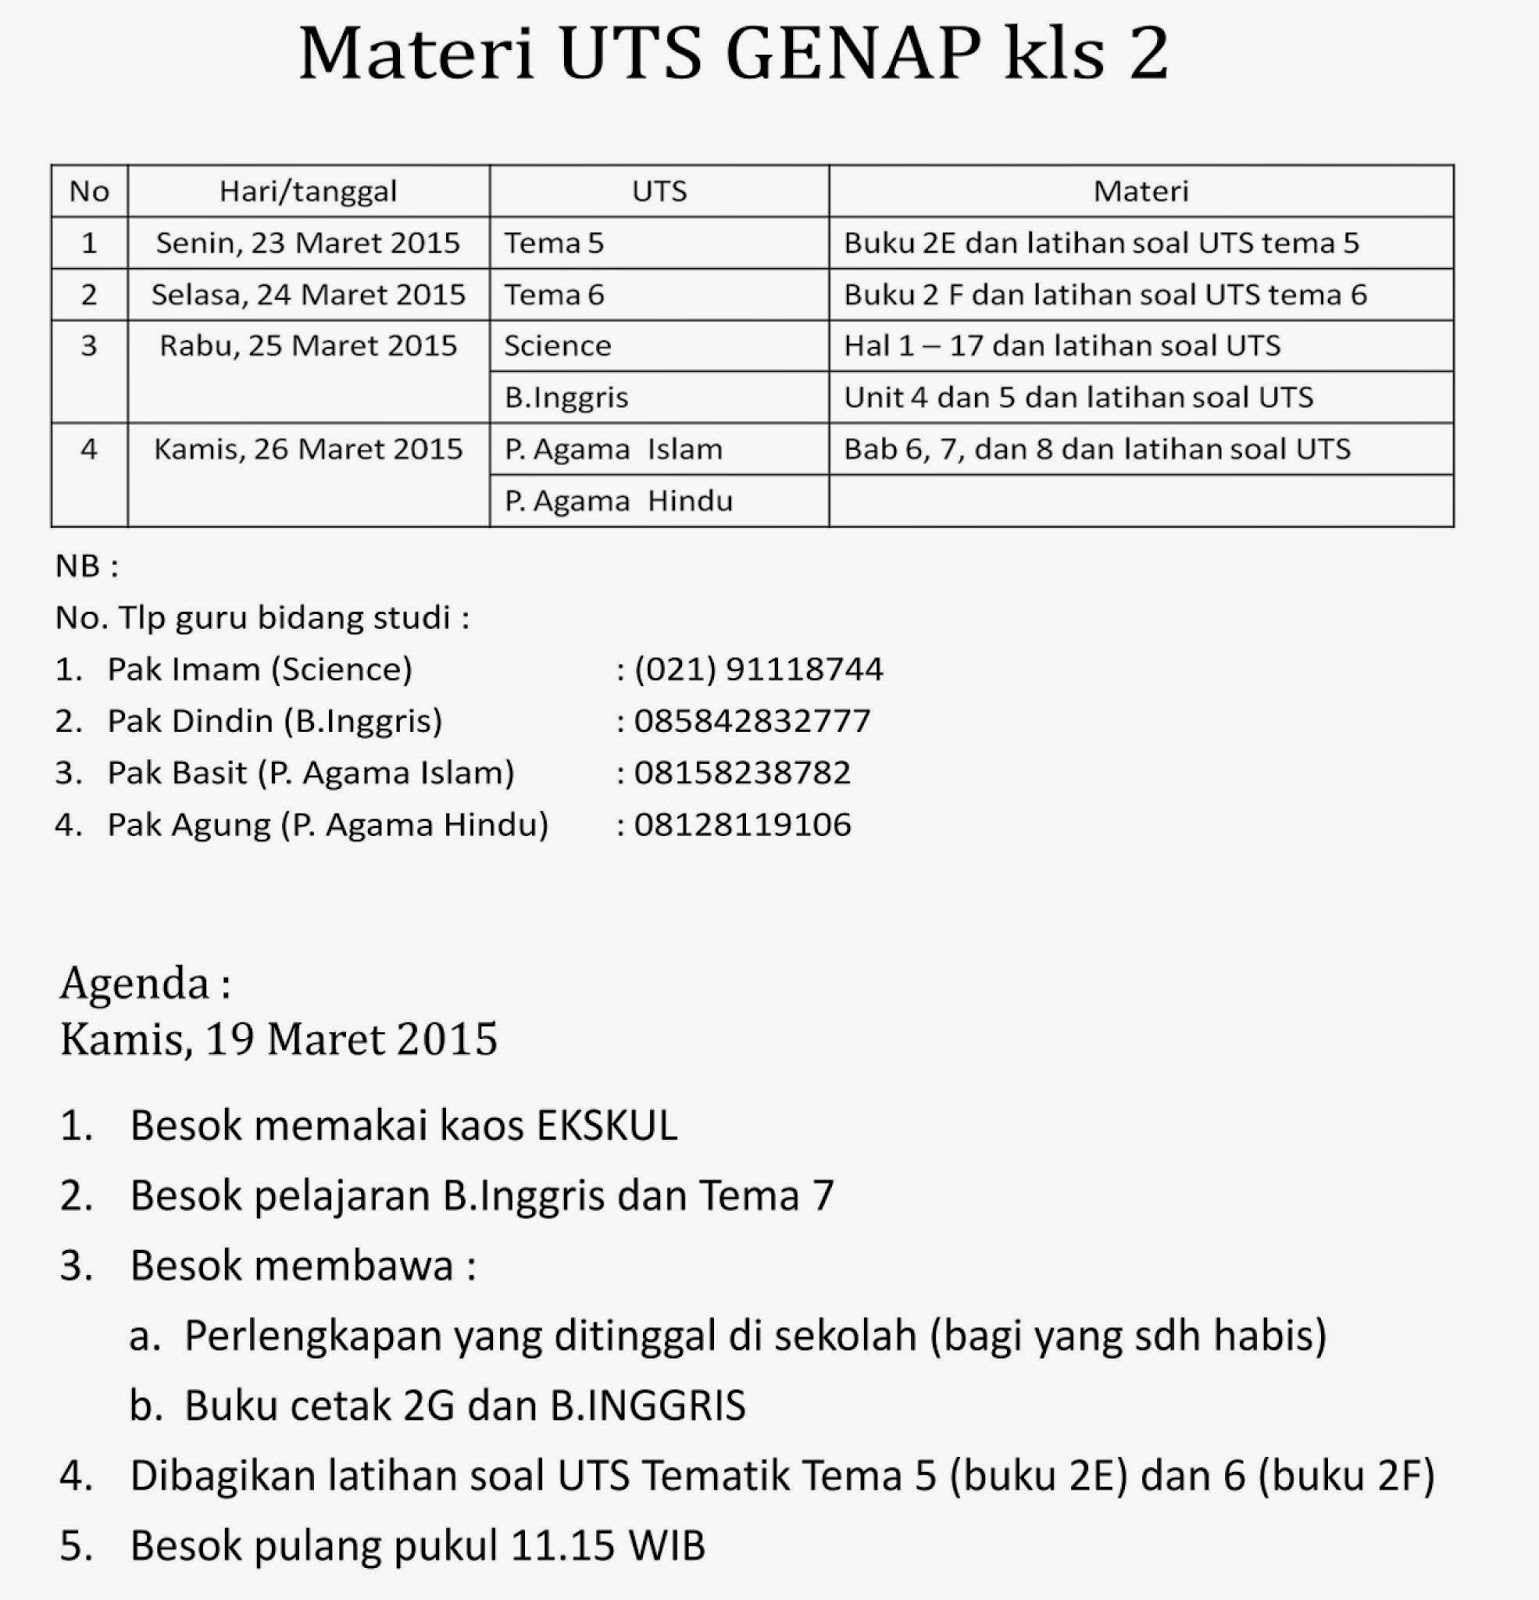 Materi UTS GENAP Kelas 2 dan Agenda Kamis 19 Maret 2015